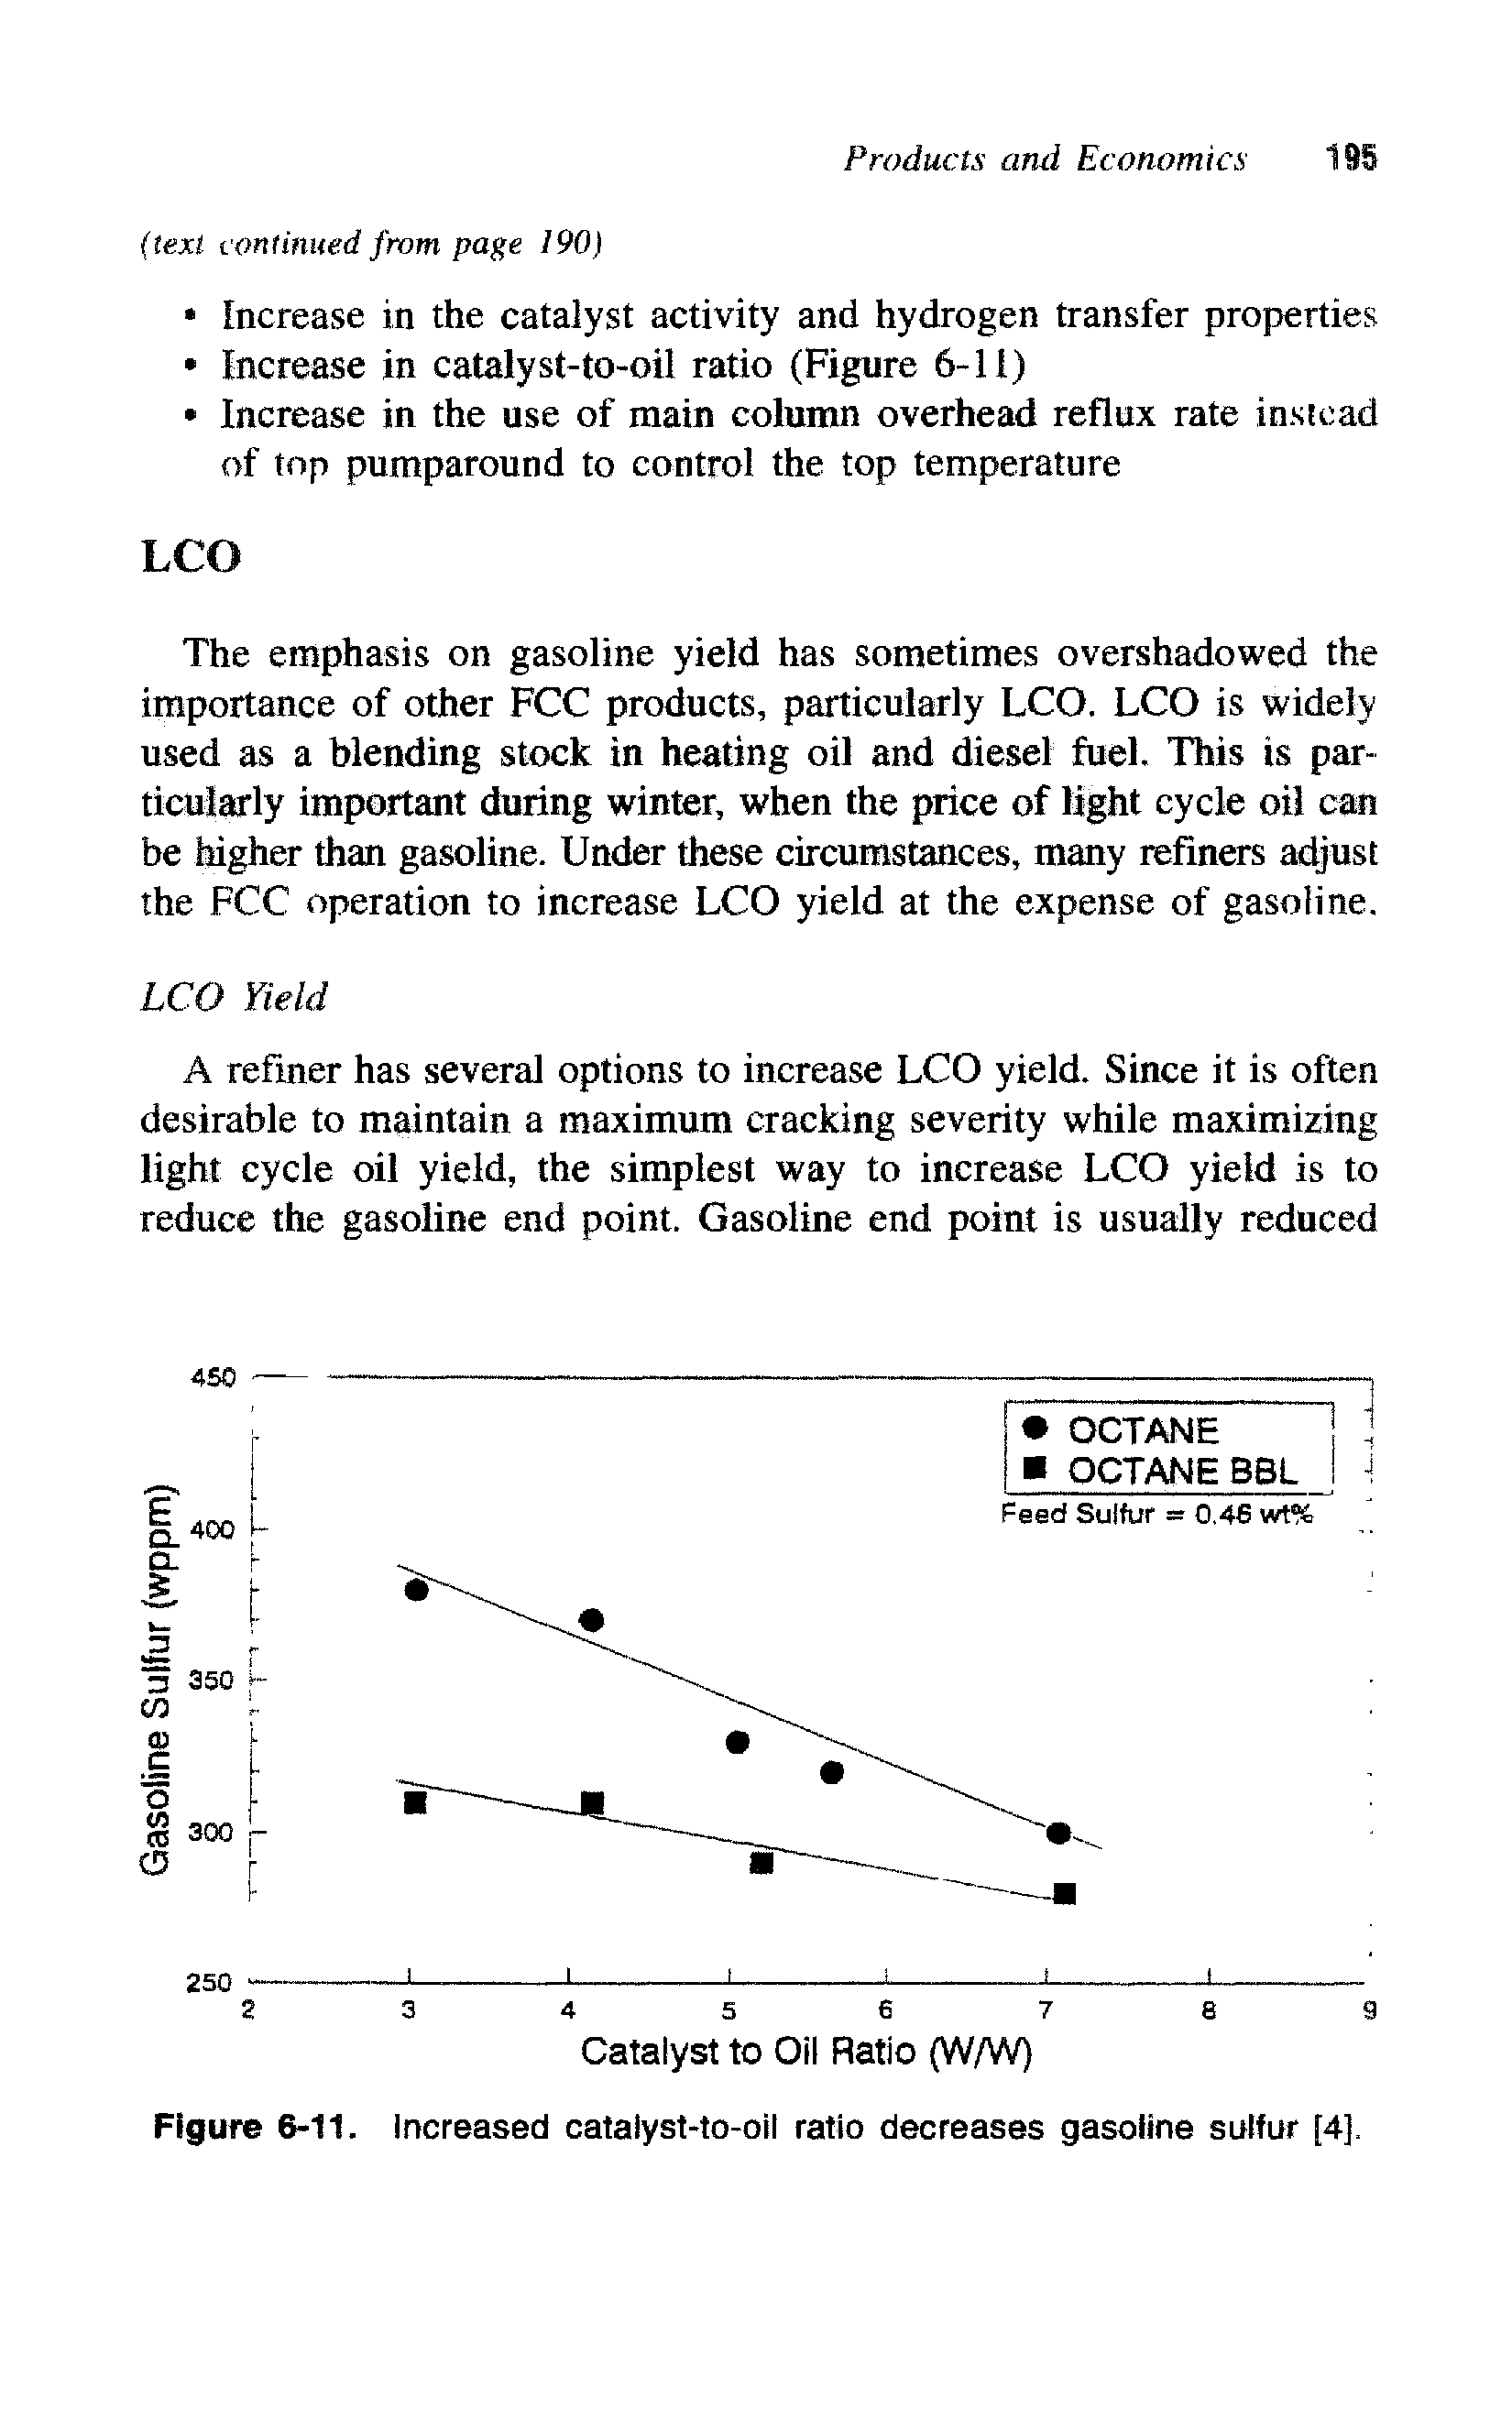 Figure 6-11. Increased catalyst-to-oil ratio decreases gasoline sulfur [4],...